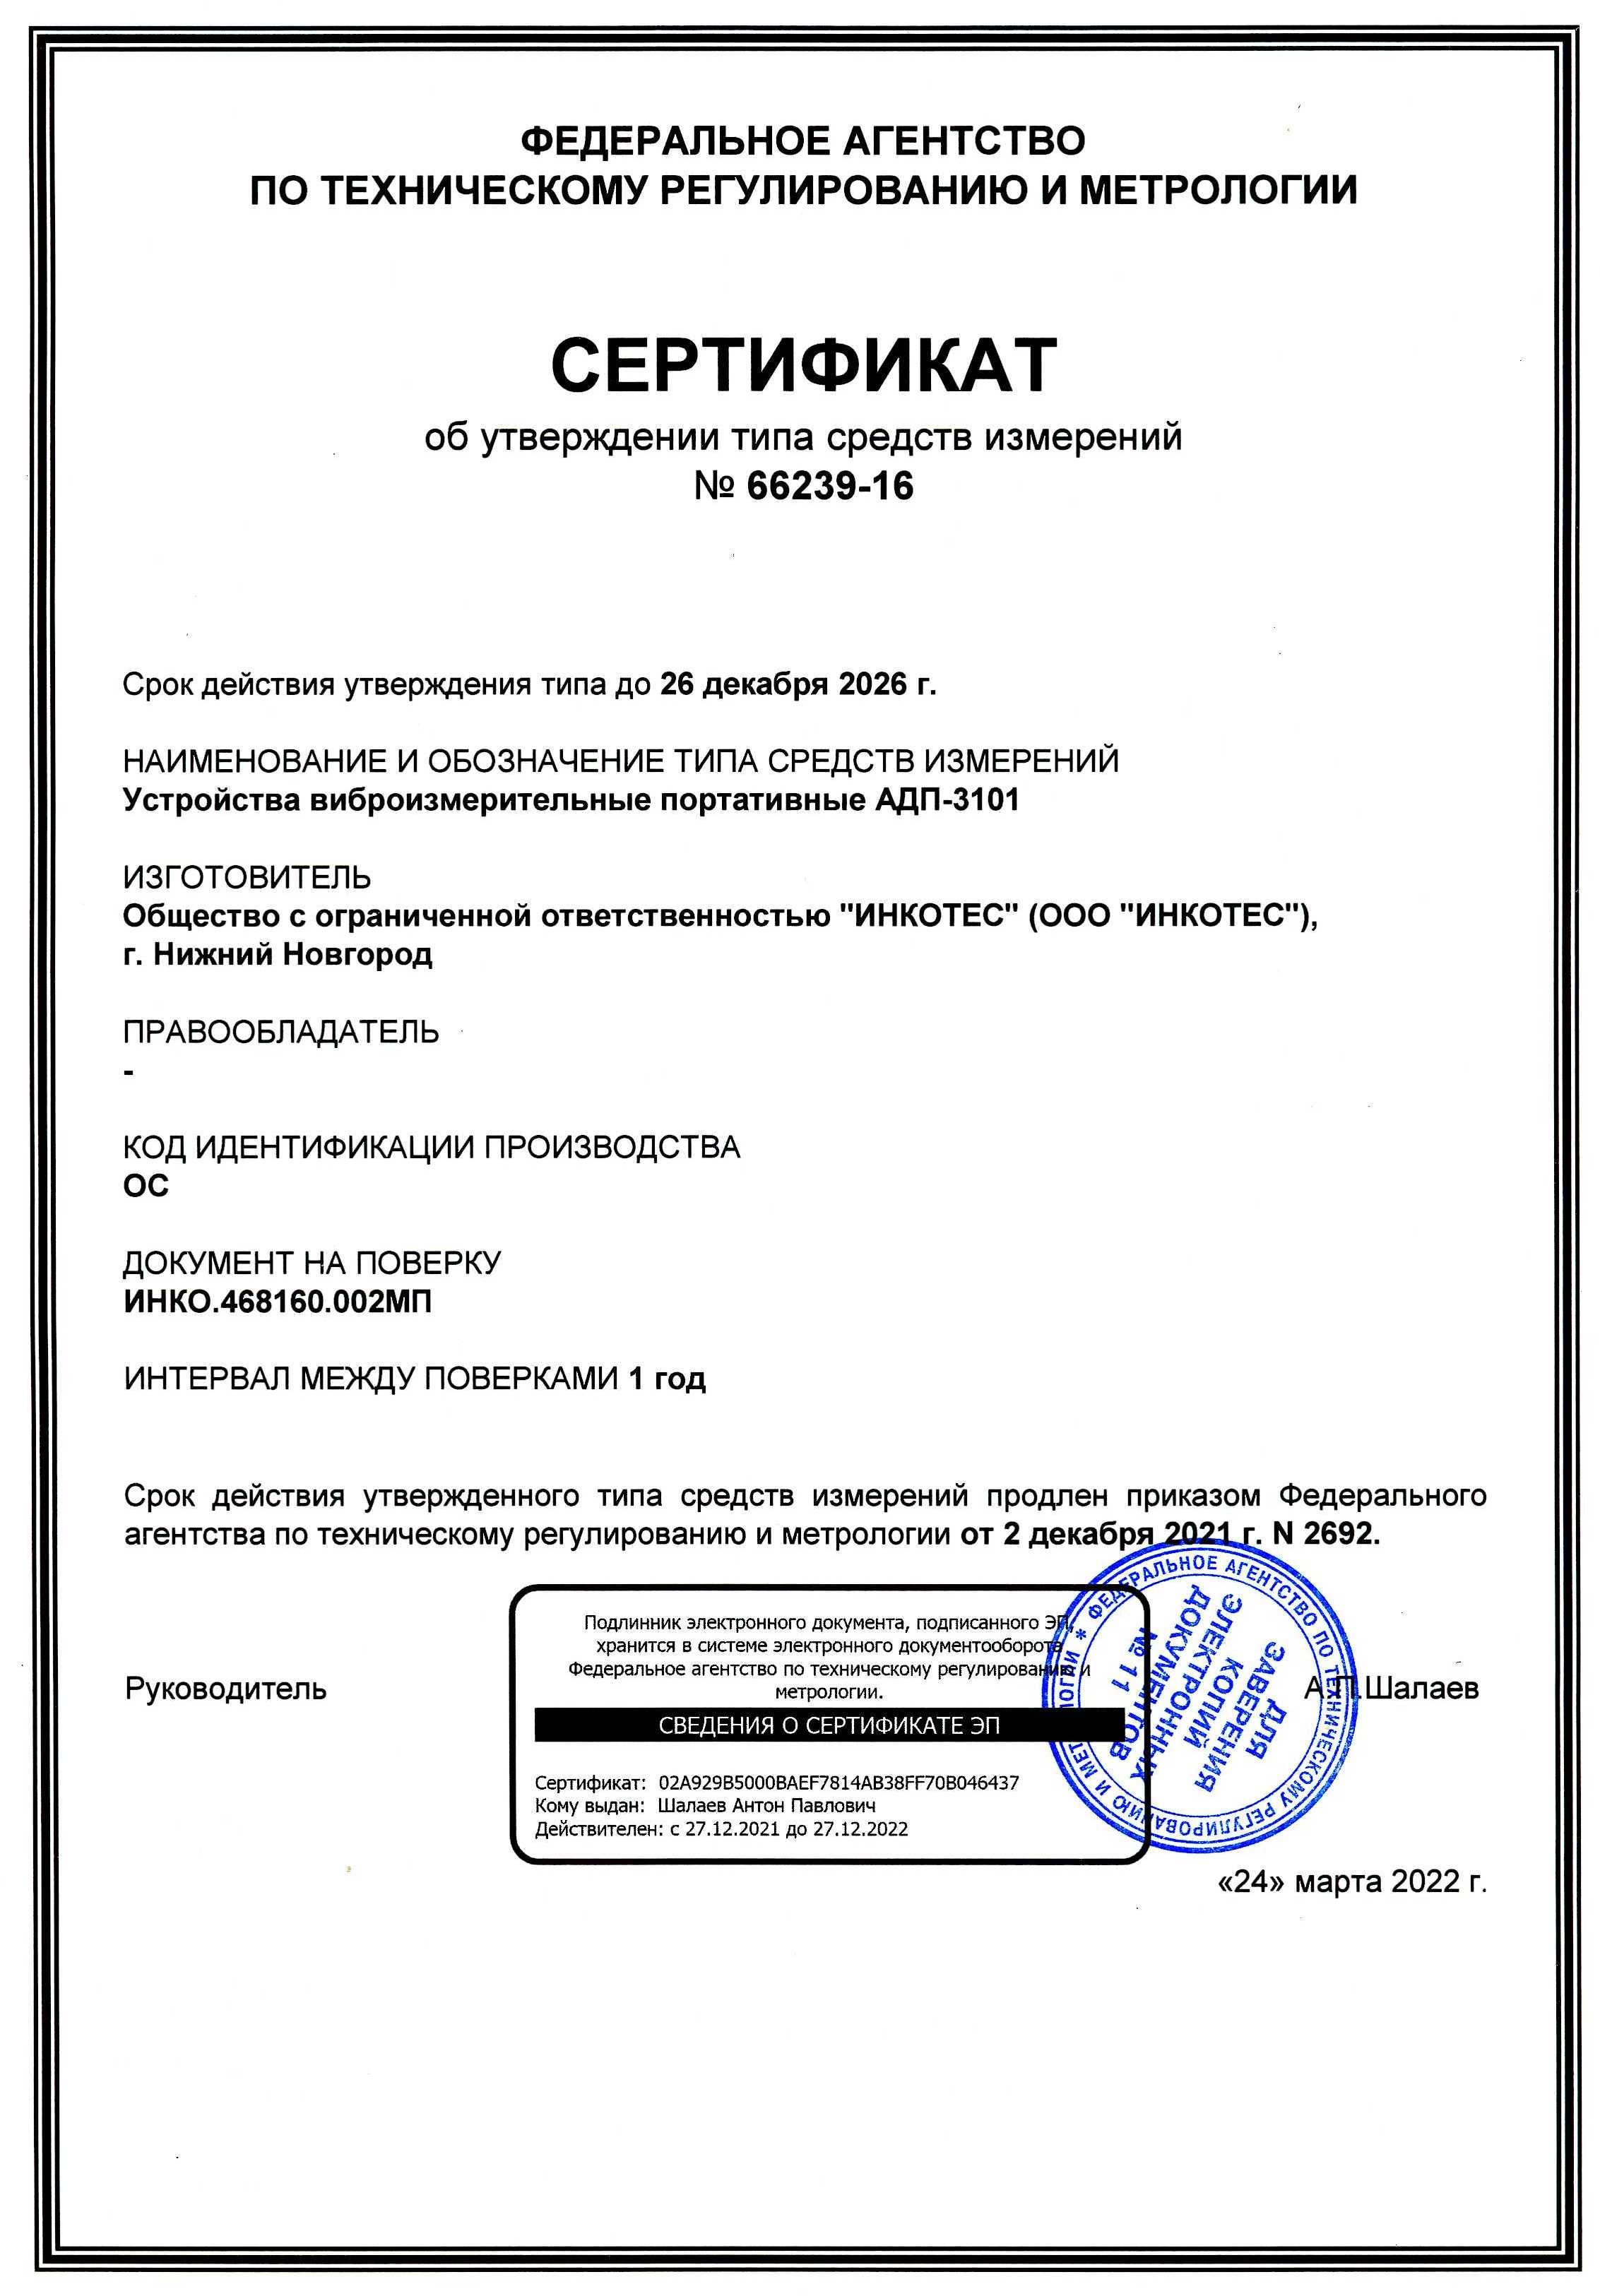 Сертифика АДП-3101